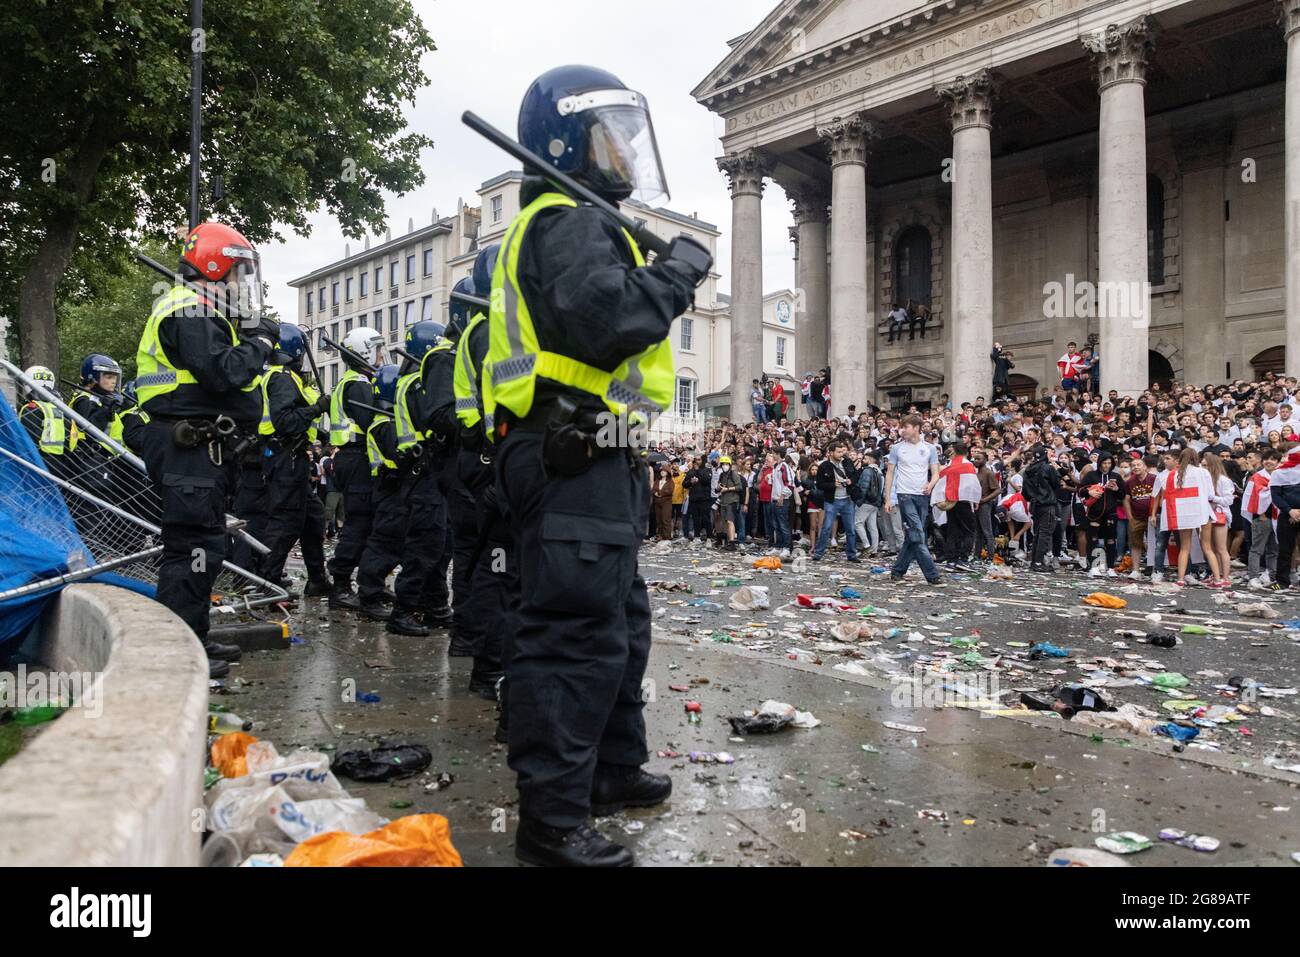 Beim Finale der EM 2020 zwischen England und Italien, Trafalgar Square, London, 11. Juli 2021, kam es zu einem Zusammenstoß der Bereitschaftspolizei mit Fans Stockfoto